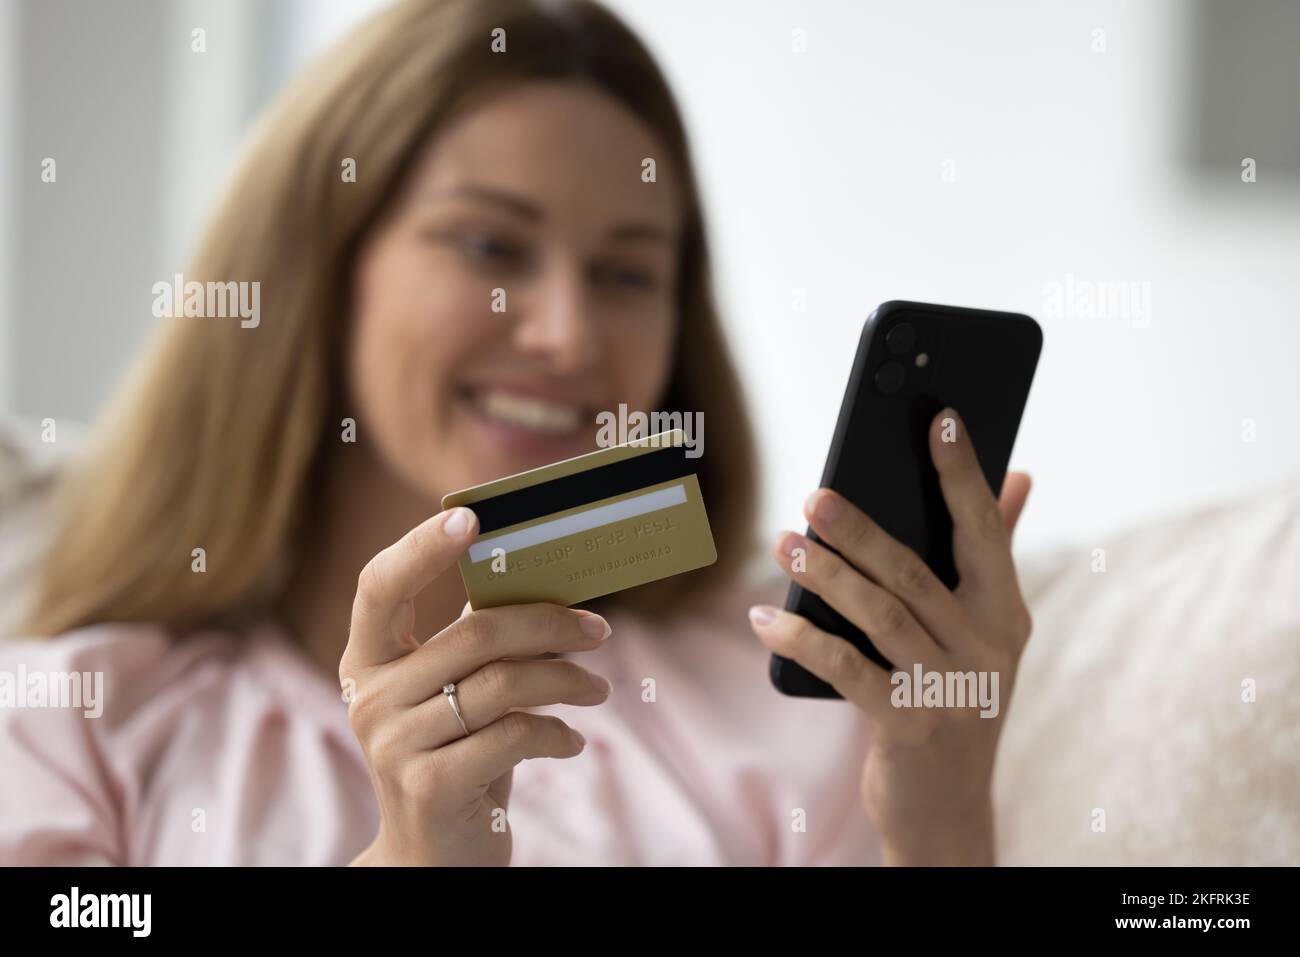 Primer plano tiro manos femeninas con tarjeta de crédito y smartphone Foto de stock